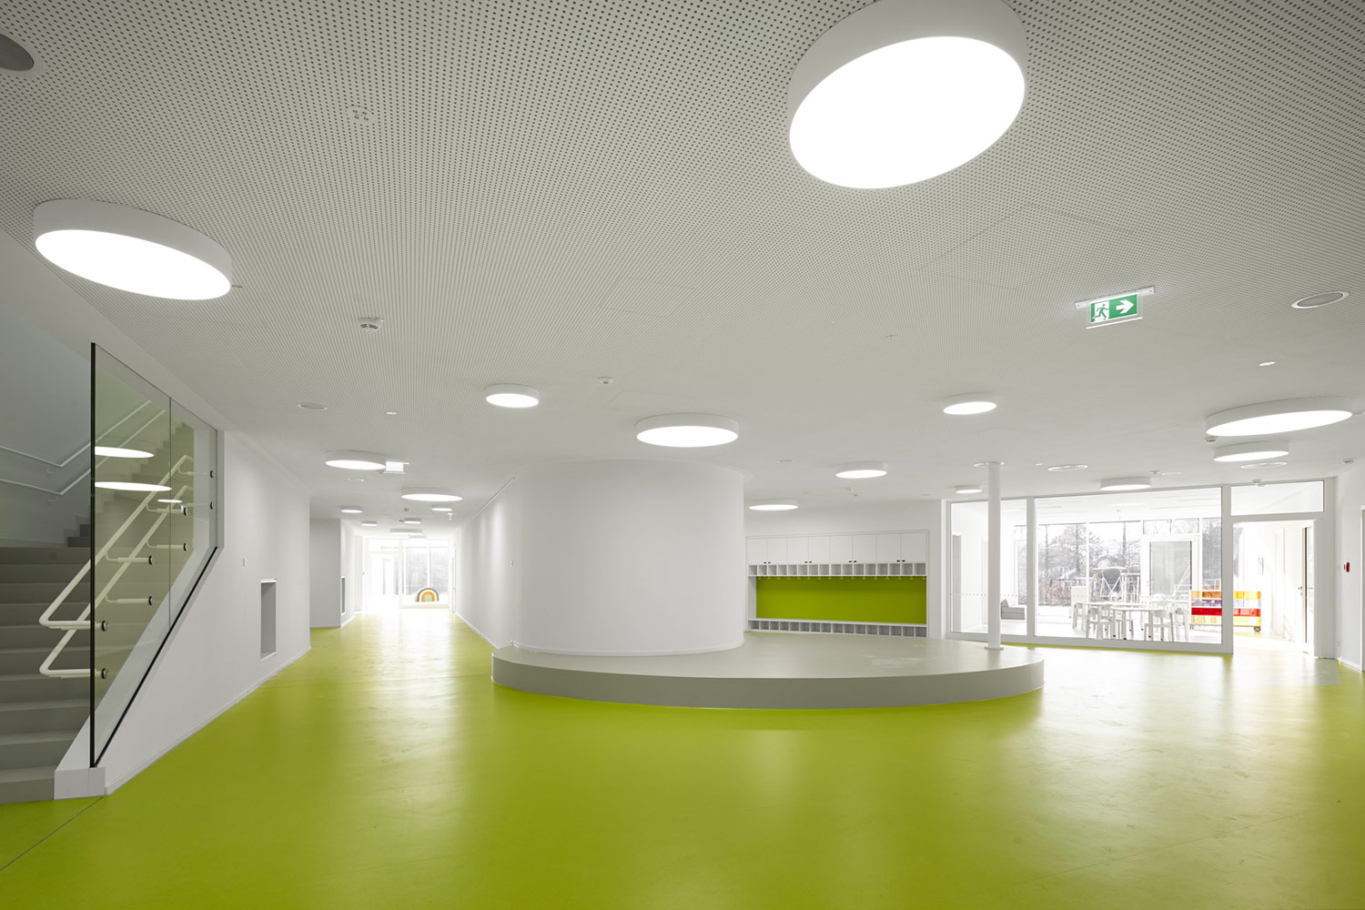 Architekturfotografie Lioba Schneider: Neubau des Kita der Bayer AG in Leverkusen in Holzbauweise. Der sehr grüne Bodenbelag kontrastiert sehr zu den weisen Wänden.